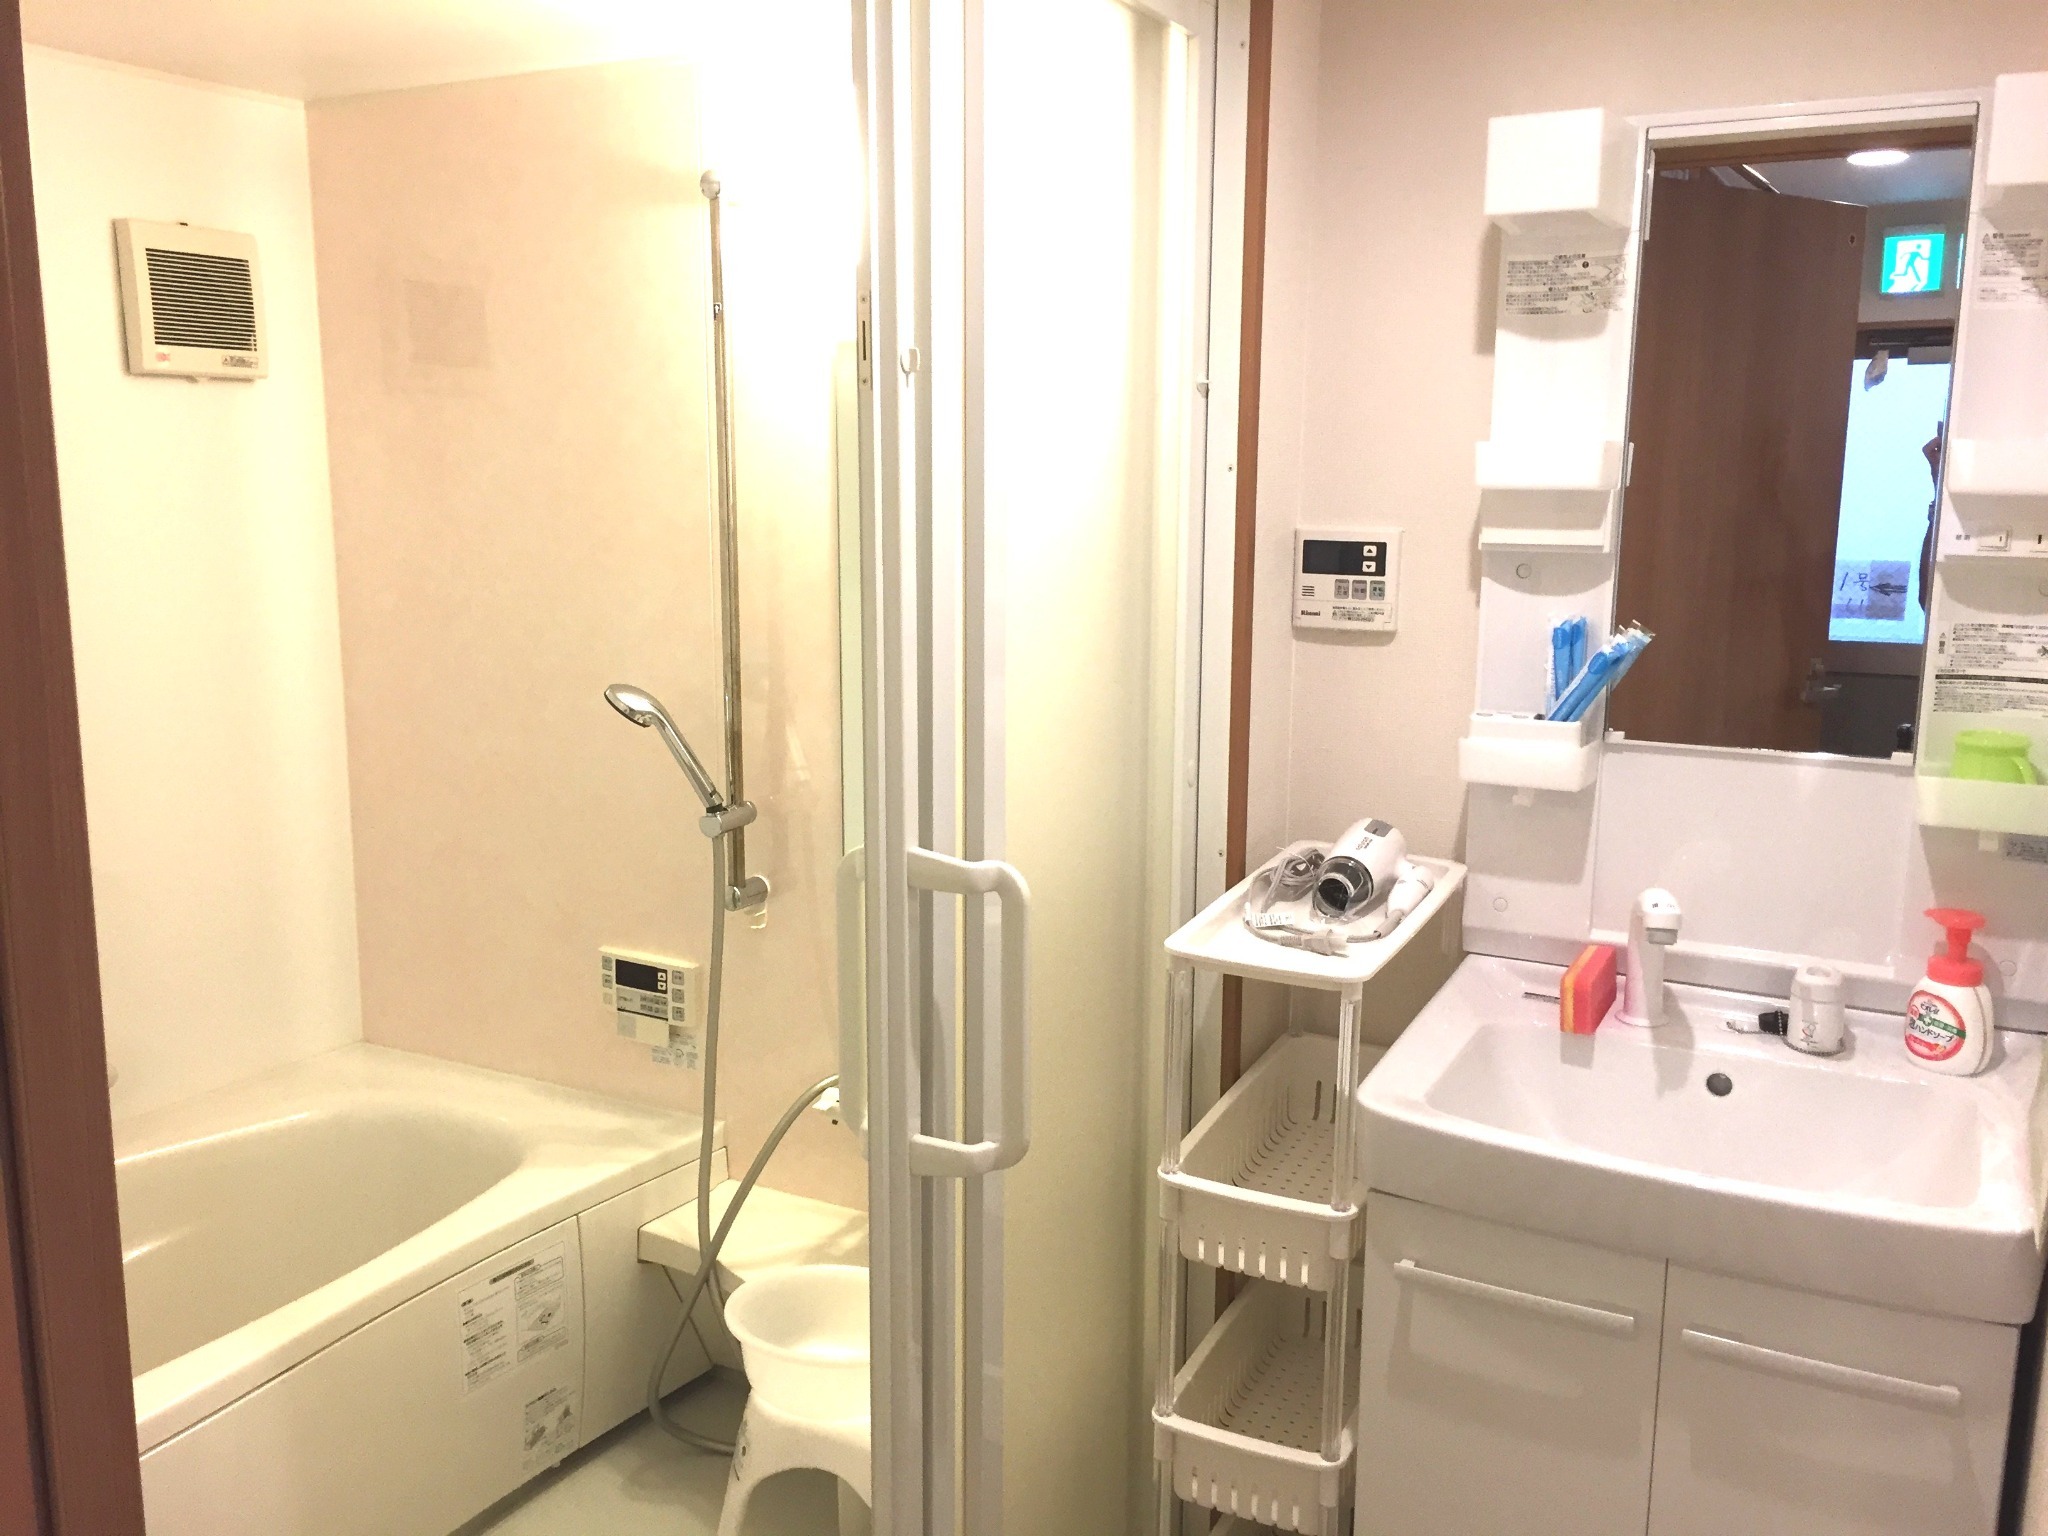 1F101号室 トイレ・浴室独立 / 浴室には大型浴槽